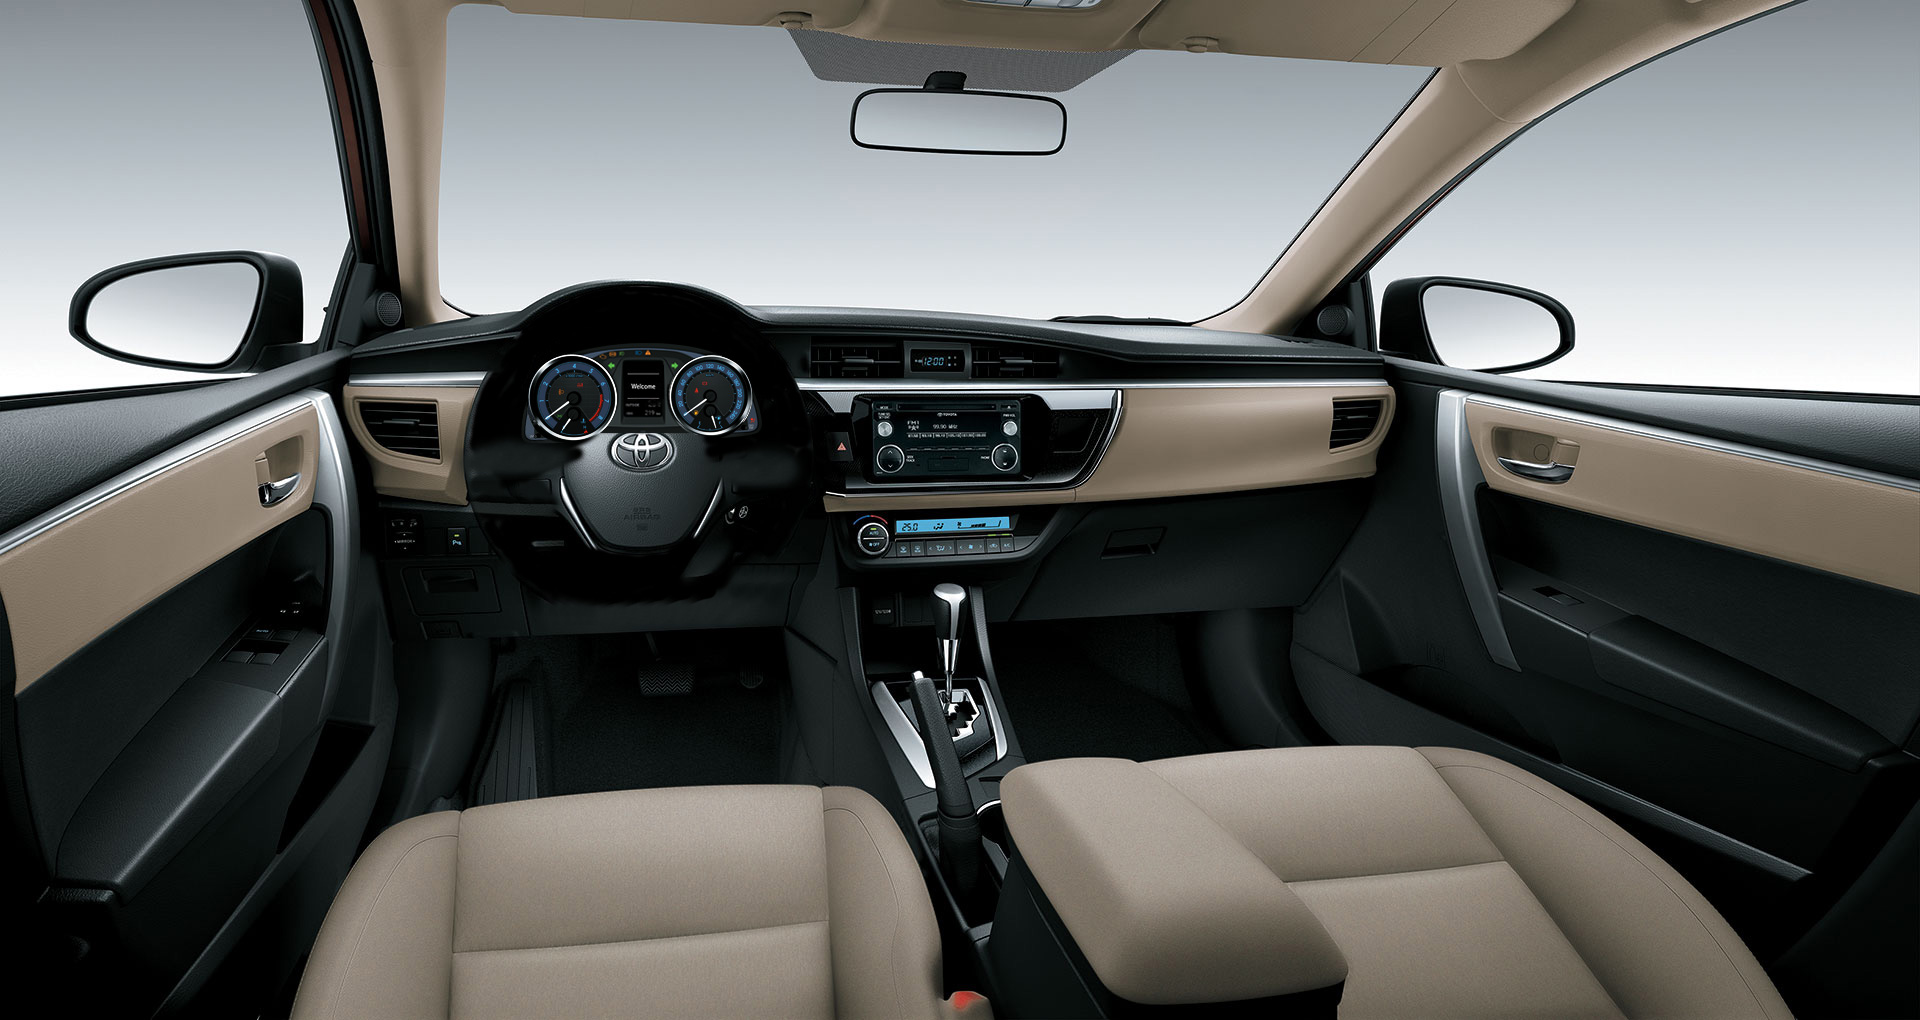  Ở phiên bản mới 2016, TMV chủ yếu tập trung cải thiện trang bị nội thất cho Corolla Altis 